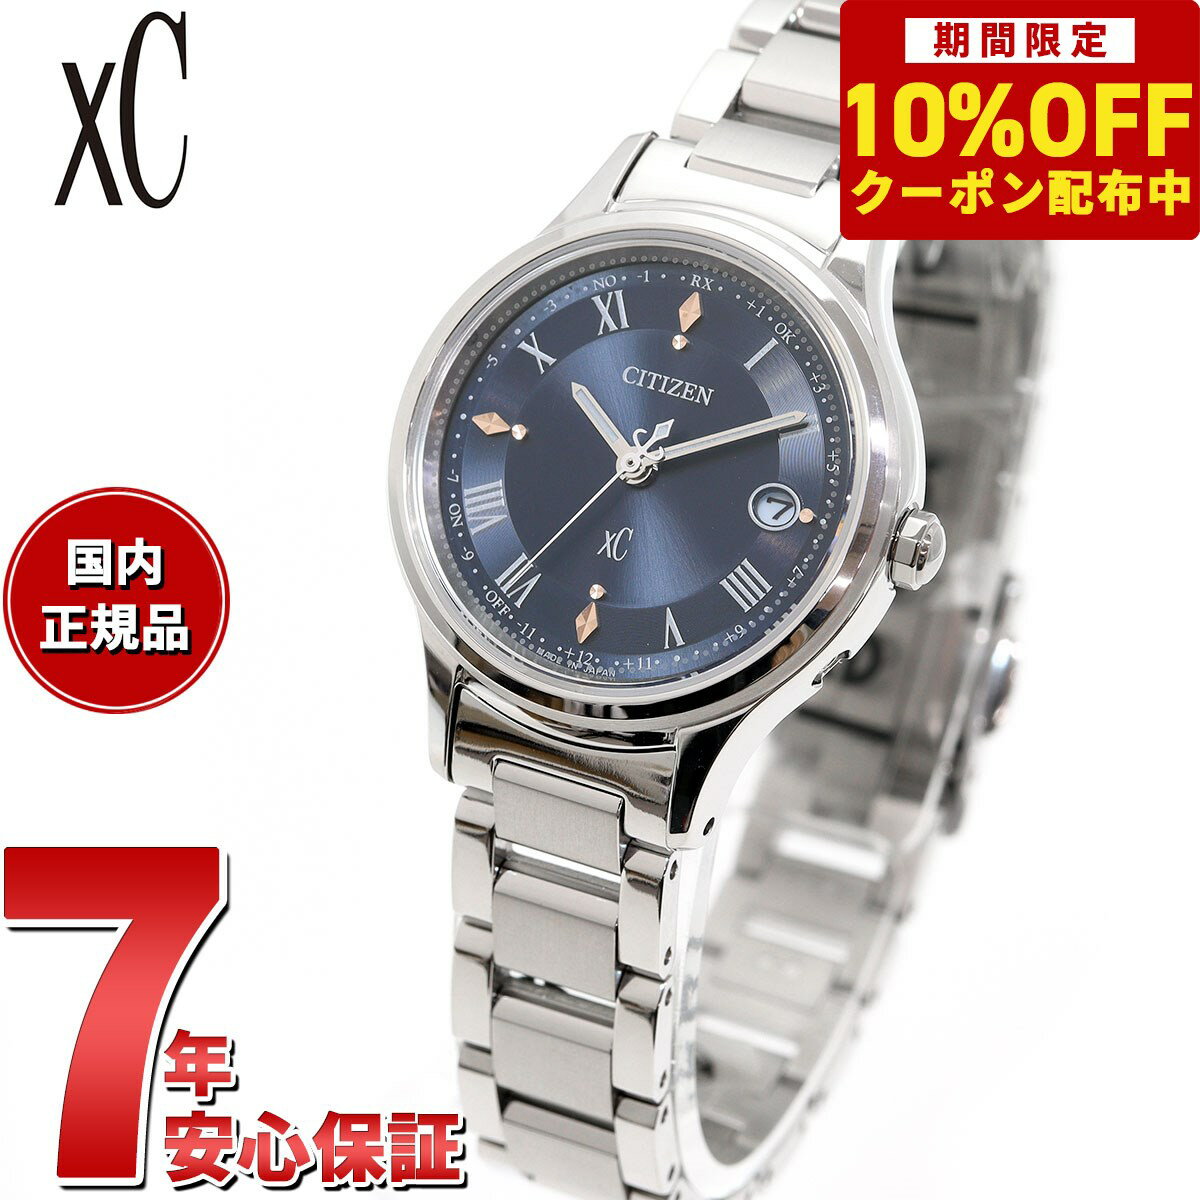 シチズン クロスシー エコドライブ 電波 xC ES9490-61L ティタニア ハッピーフライト レディース 腕時計 サブマスコミモデル CITIZEN hikari collection